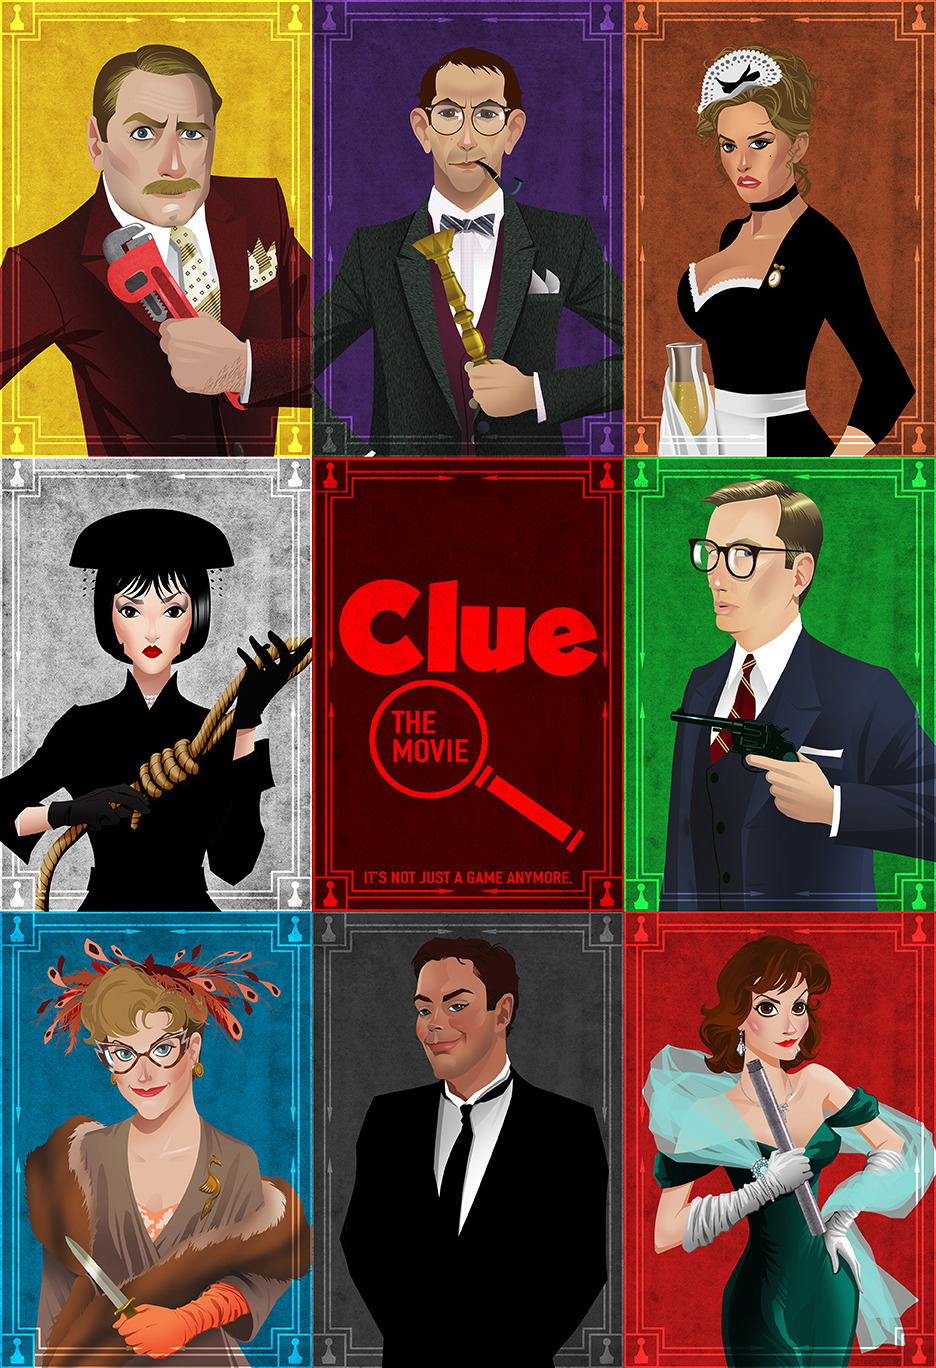 Sony planea llevar 'Clue' a cine y televisión 20